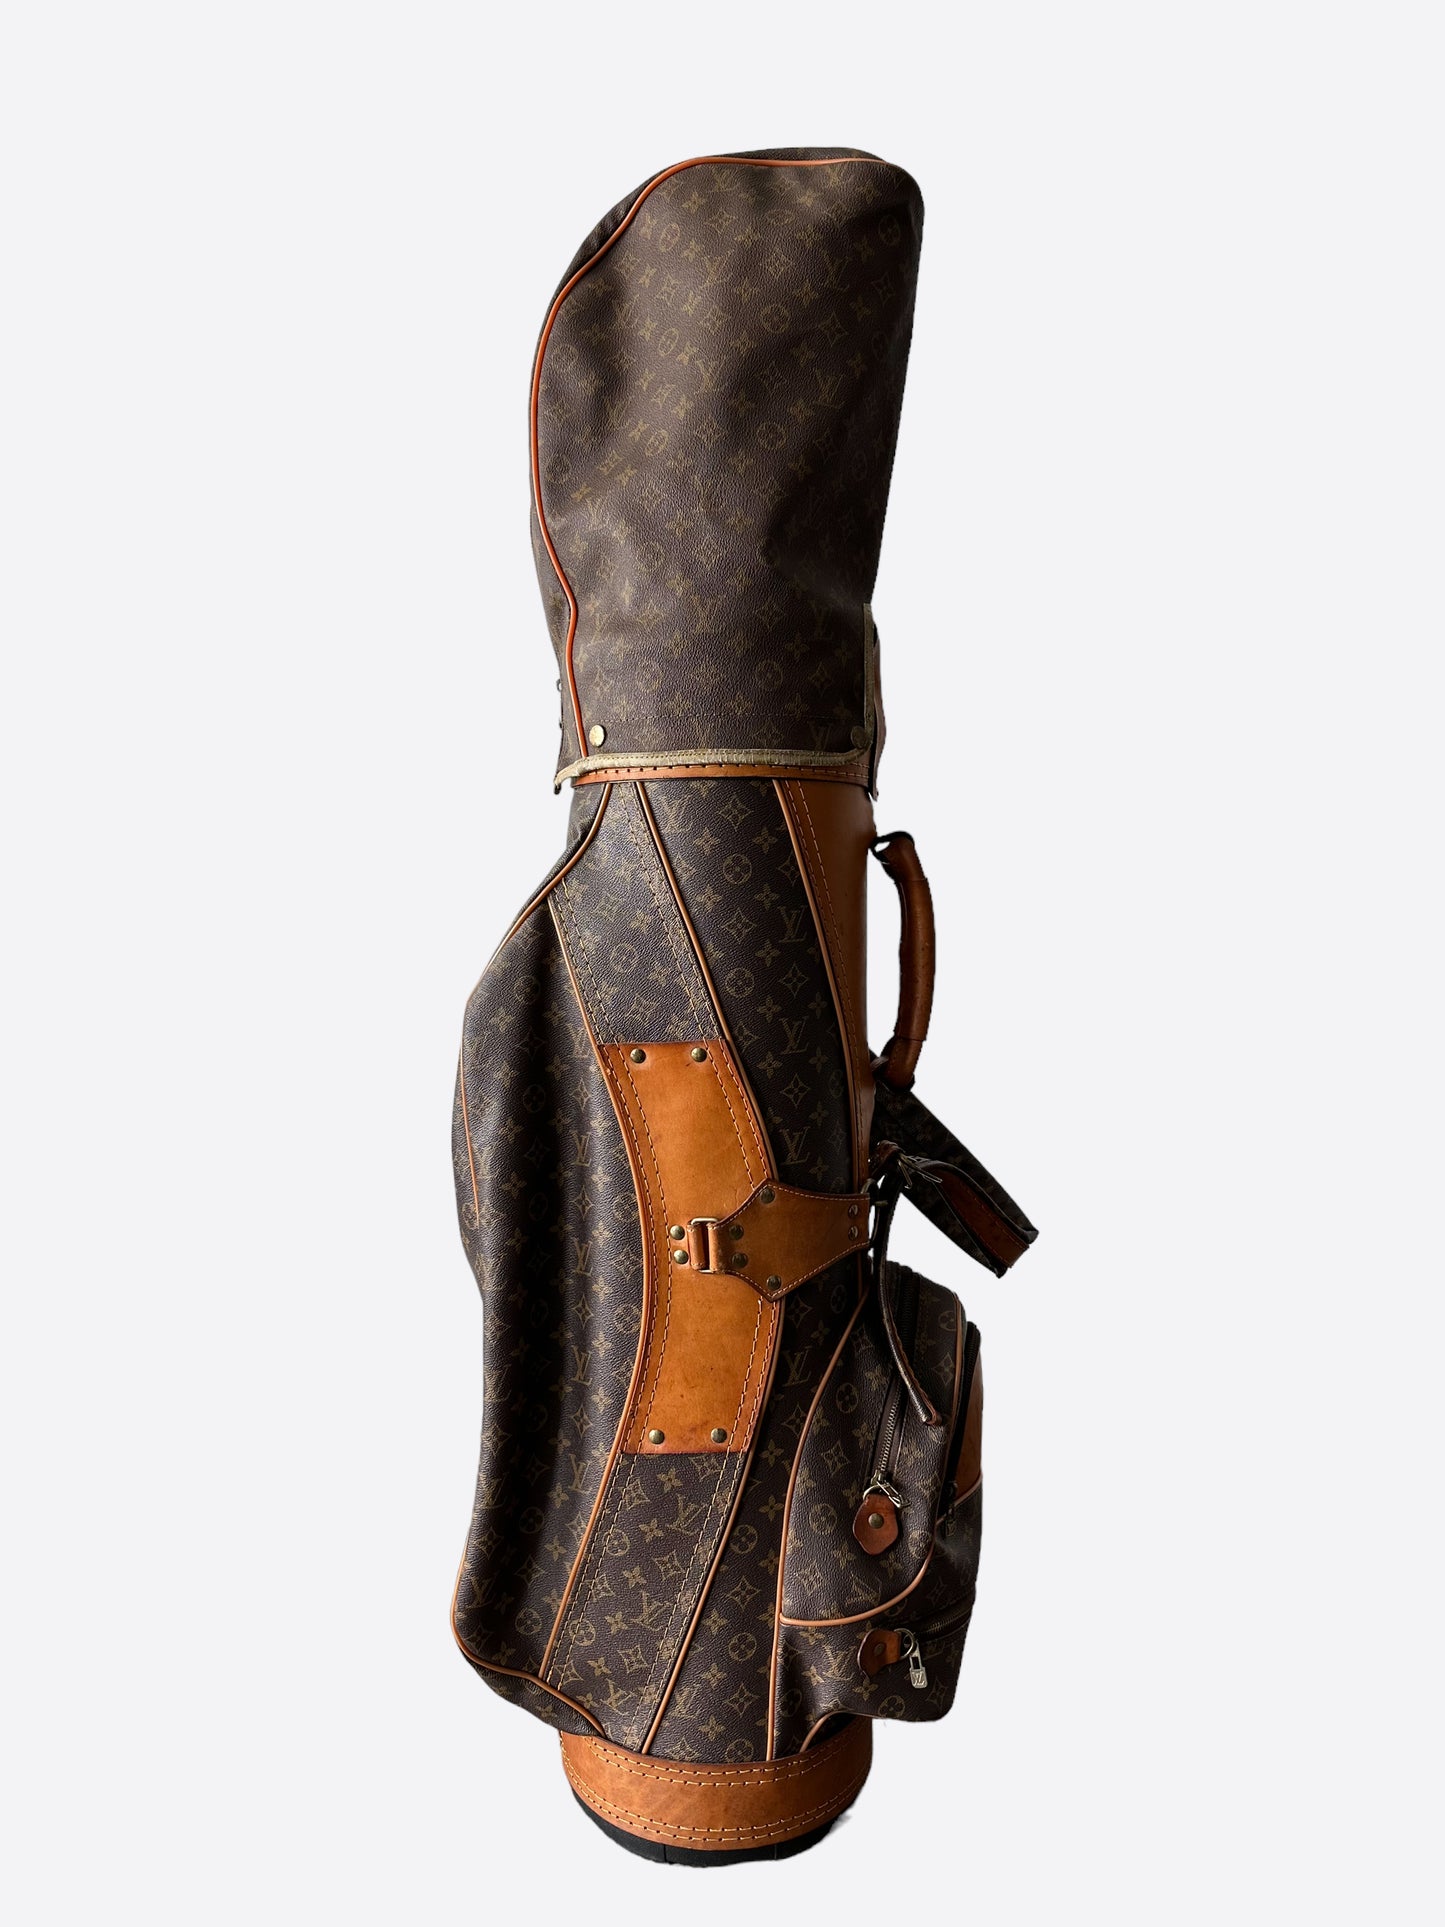 Vuitton Golf Bag - 2 For Sale on 1stDibs  louis vuitton golf bag for sale, golf  bag lv, vintage lv golf bag